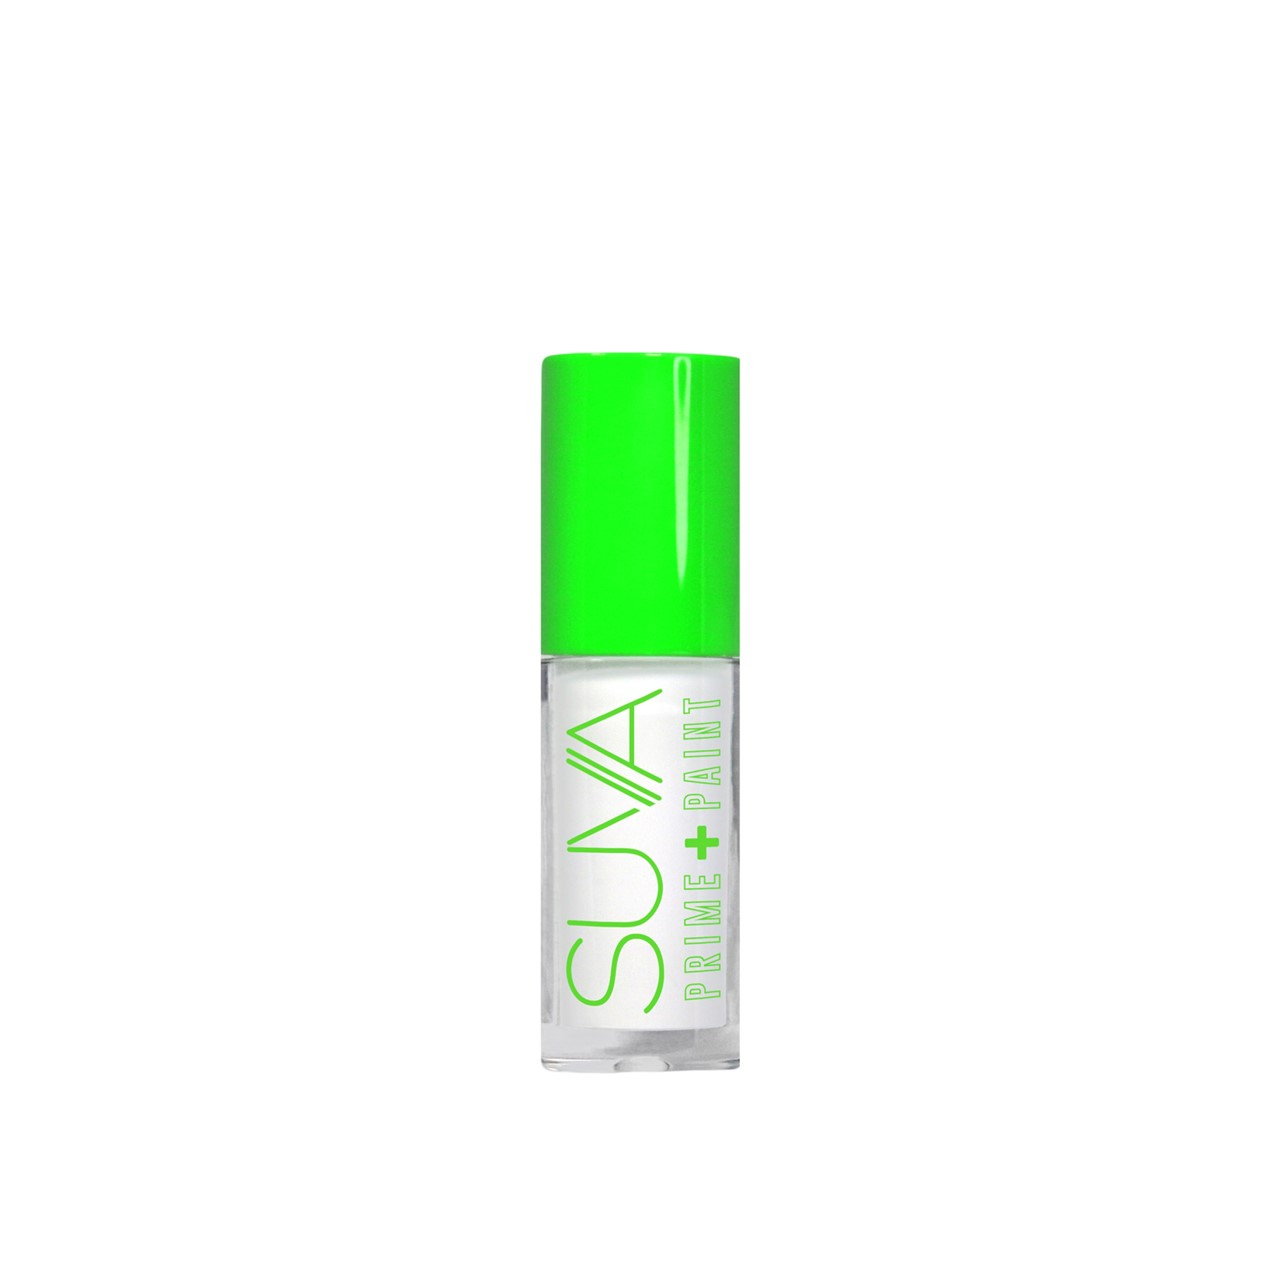 SUVA Beauty Prime + Paint White 5ml (0.17 fl oz)